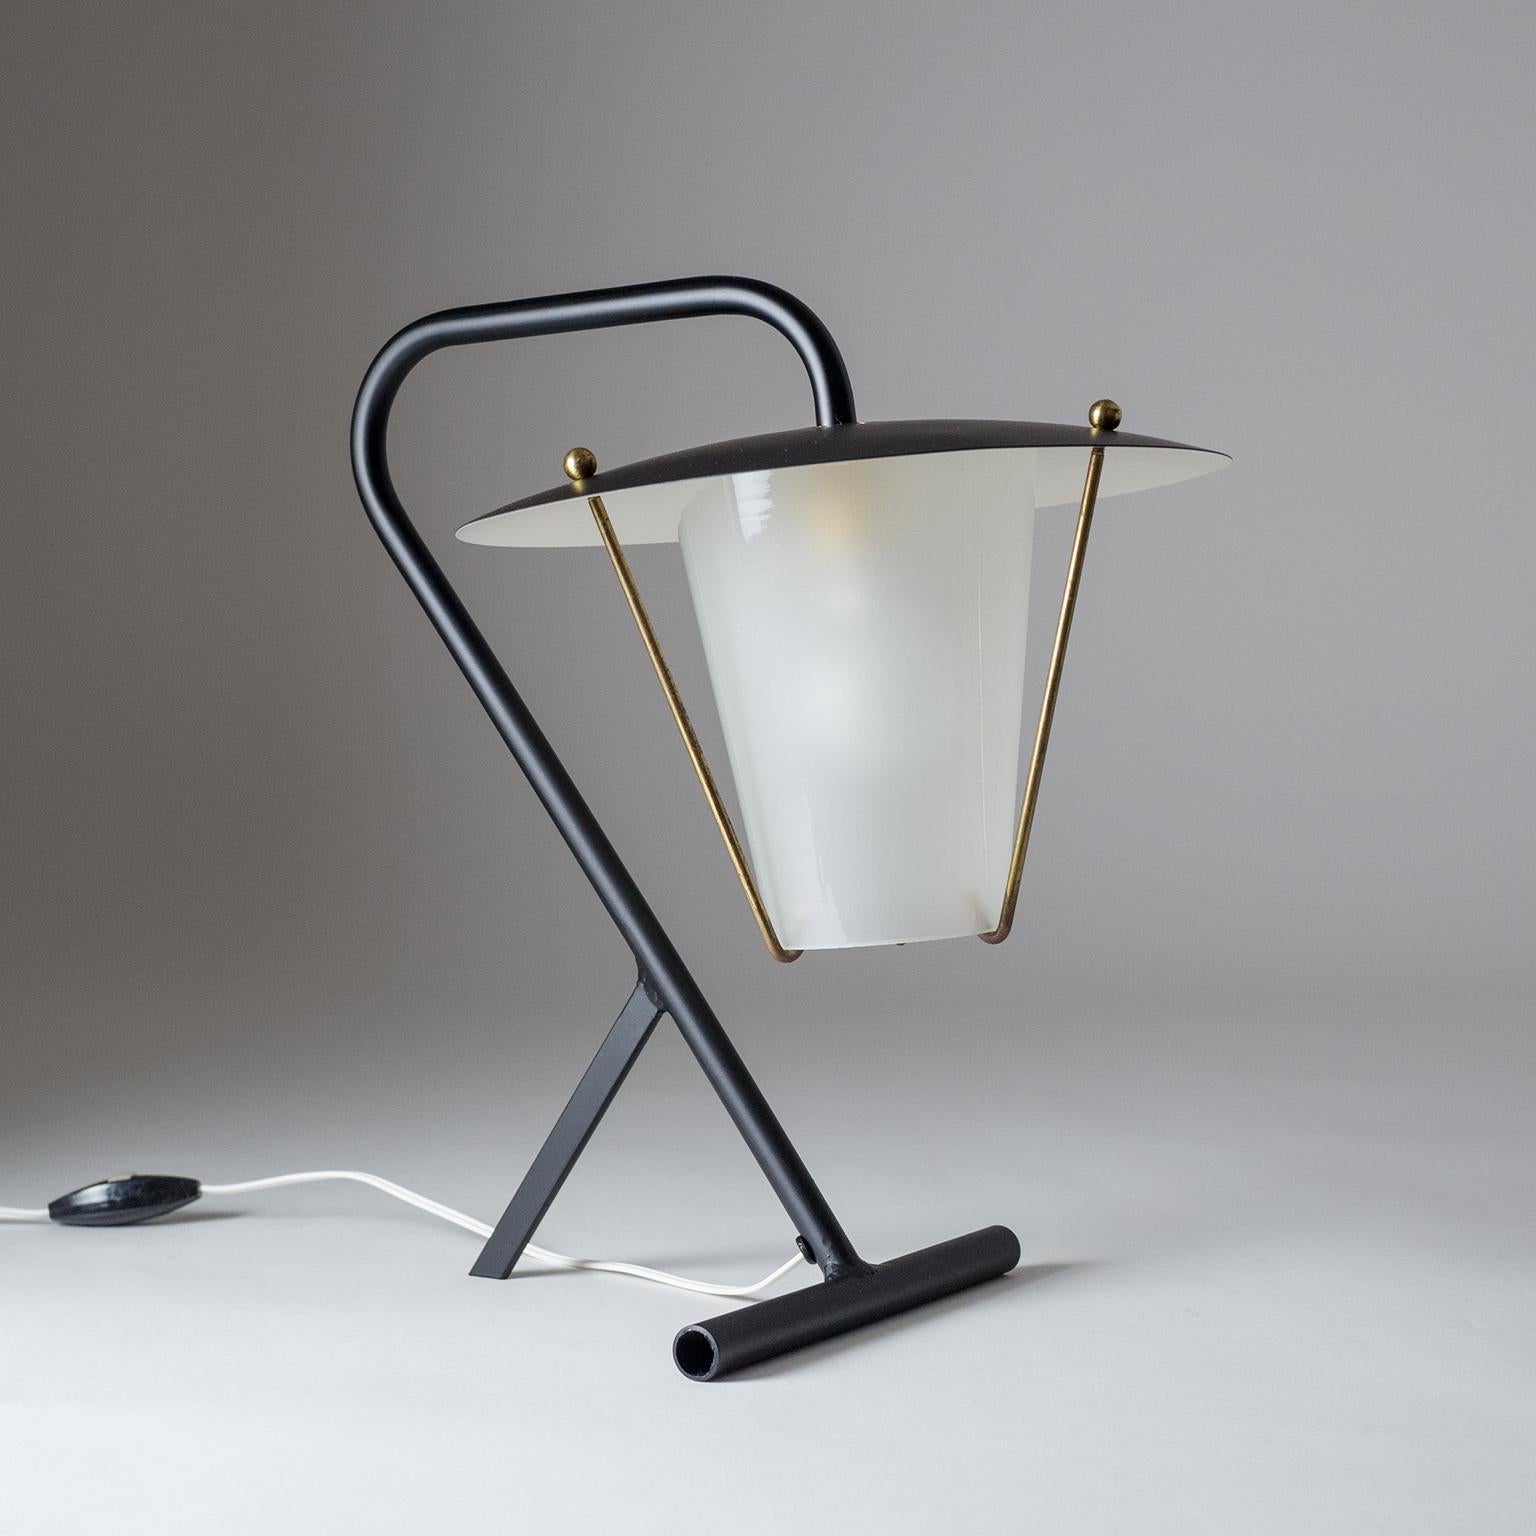 Brillante modernistische französische Tischlampe aus den frühen 1950er Jahren. Der minimalistische, skulpturale Sockel trägt einen laternenartigen Körper mit einem Glasdiffusor (innen mattiert). Eine E14-Fassung aus Messing und Keramik mit